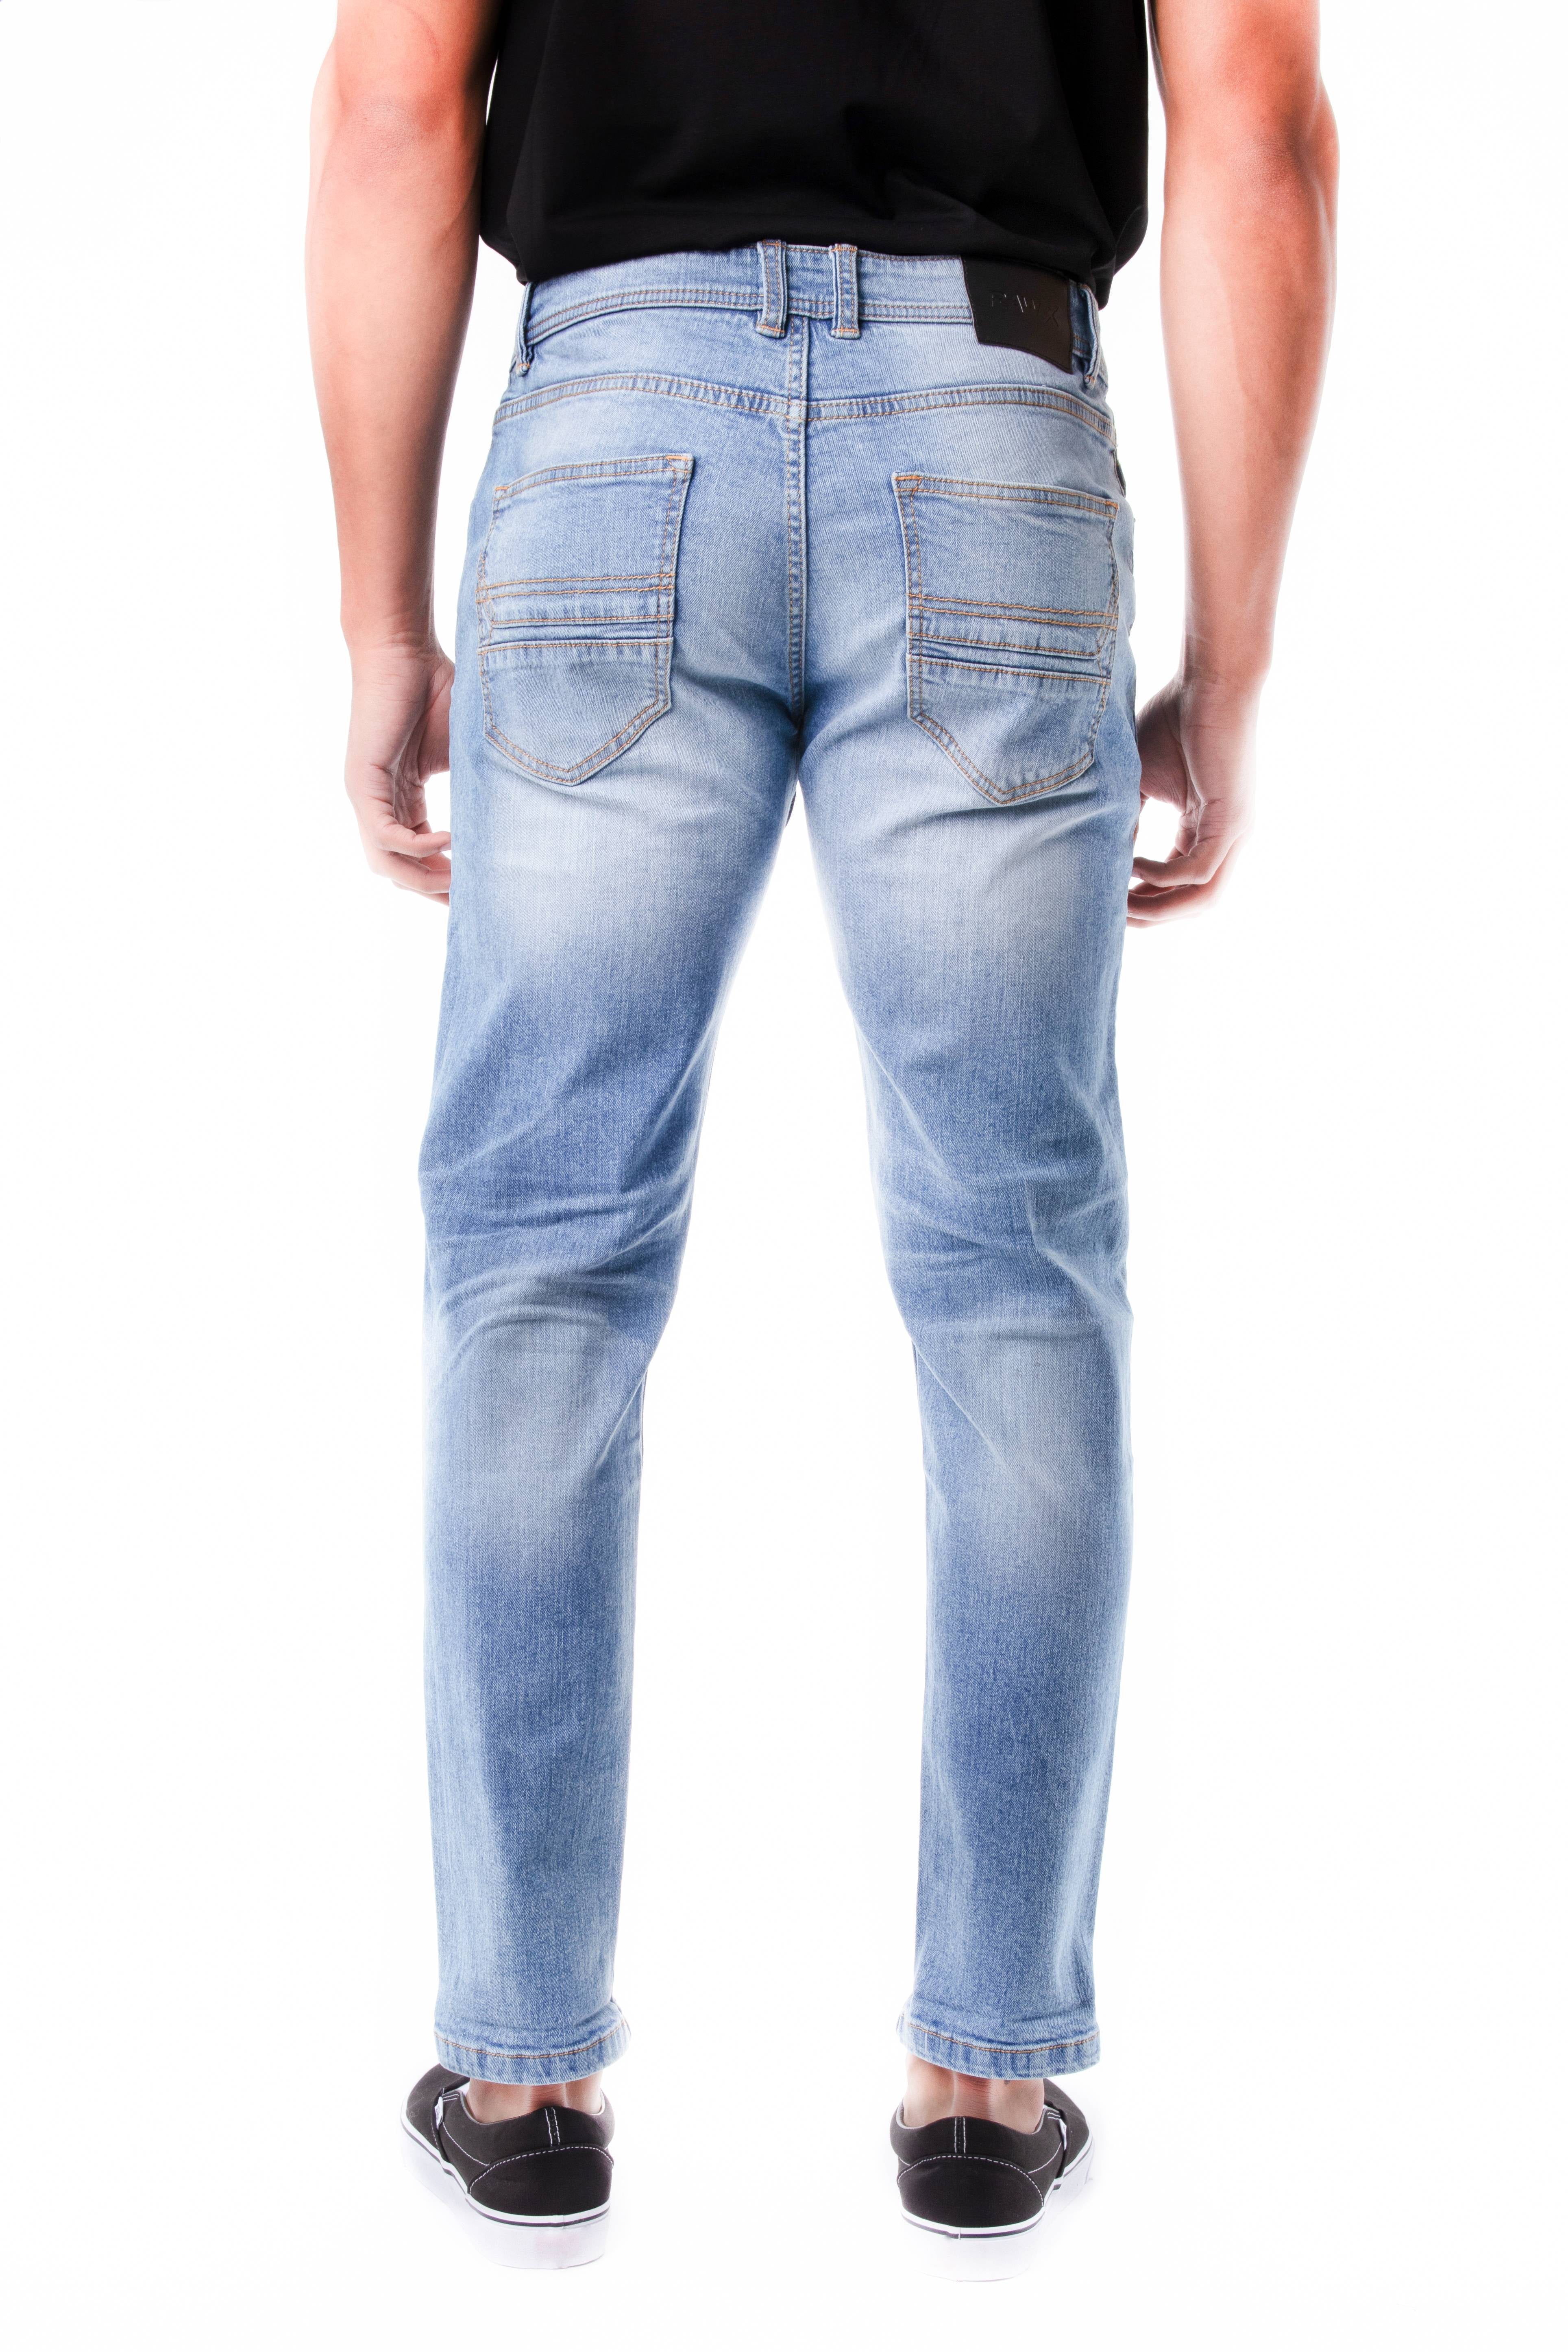 Wiens Ruimteschip Corrupt RAW X Men's Ripped Jean, Stretch Skinny Fit Denim Fashion Jeans Pants -  Walmart.com